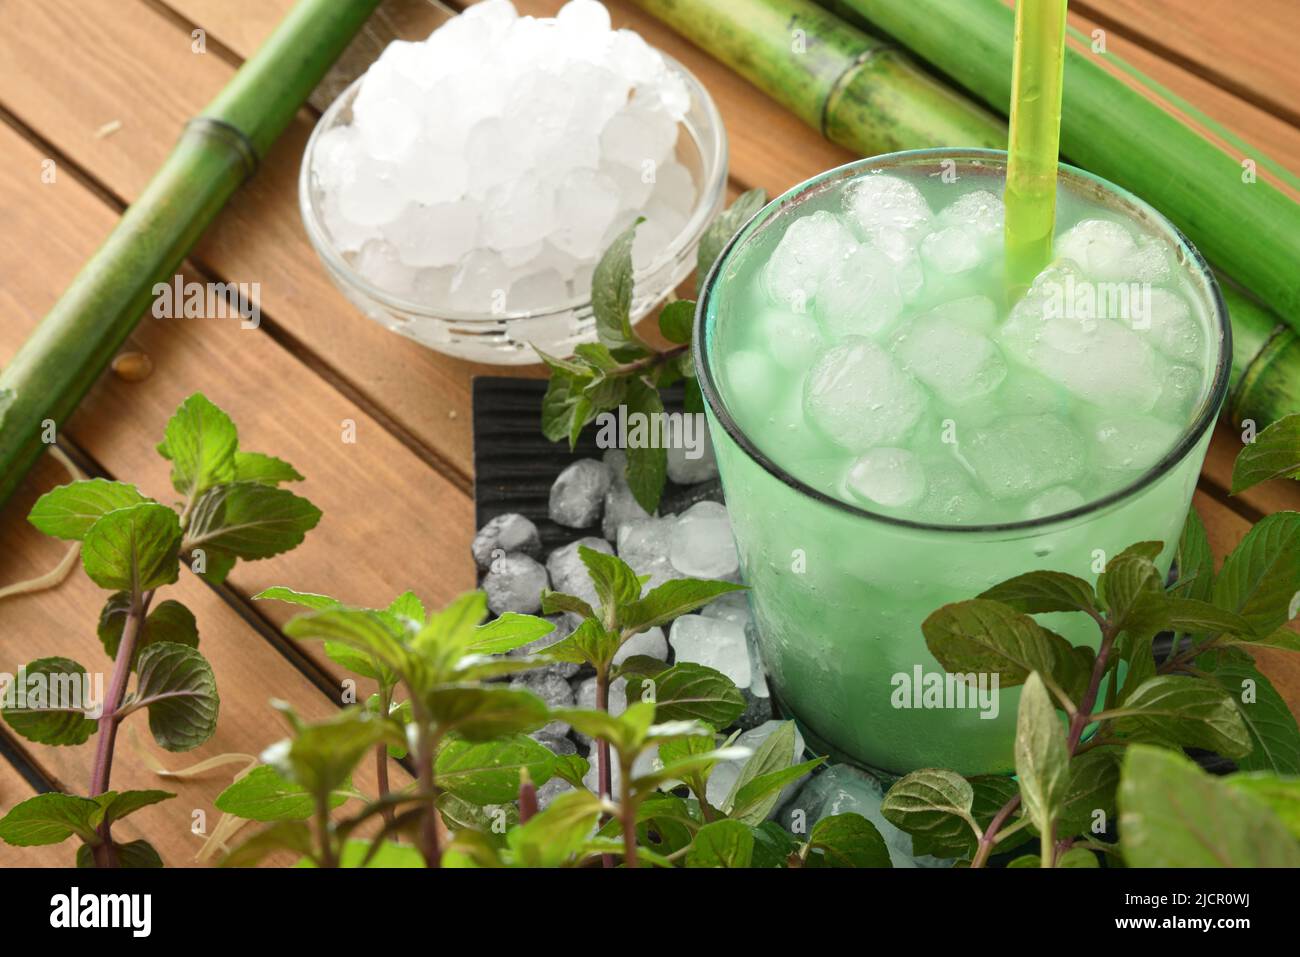 Menthe glacée naturelle sur une table en bois avec de la glace pilée avec des feuilles et plante autour. Vue en hauteur. Composition horizontale. Banque D'Images